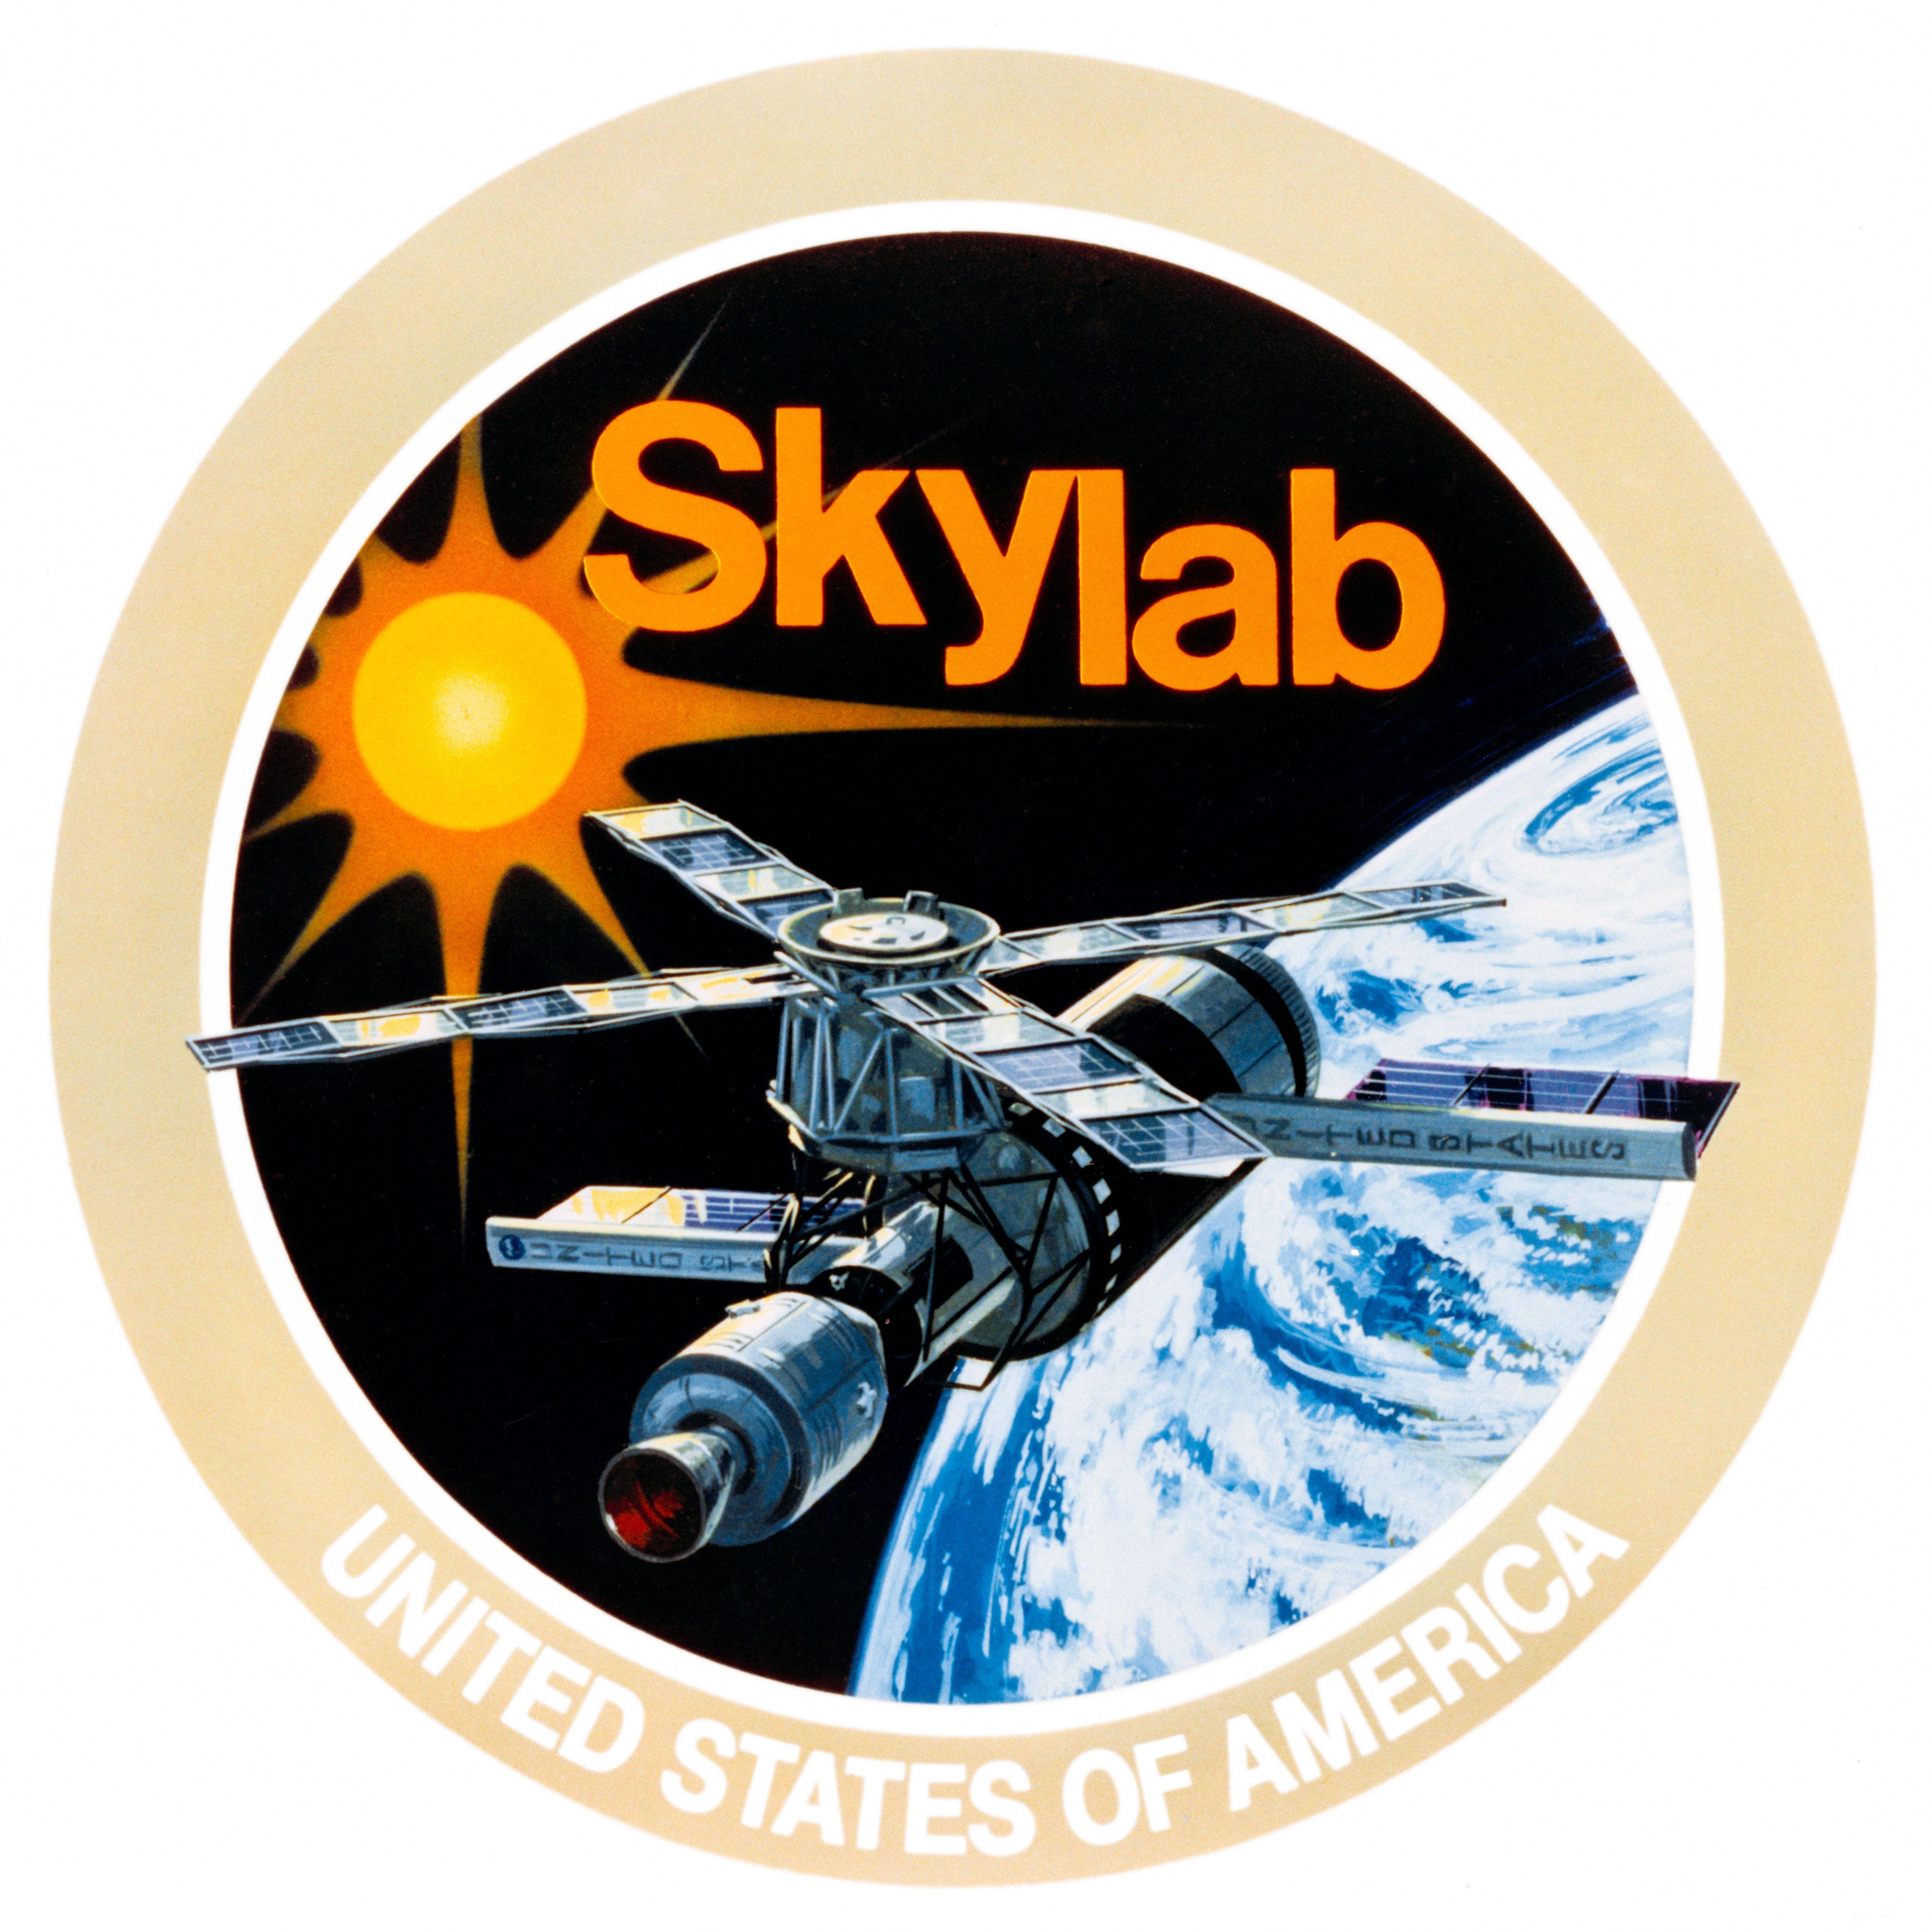 United States NASA Logo - Emblem - NASA Skylab (SL) Program | NASA Image and Video Library